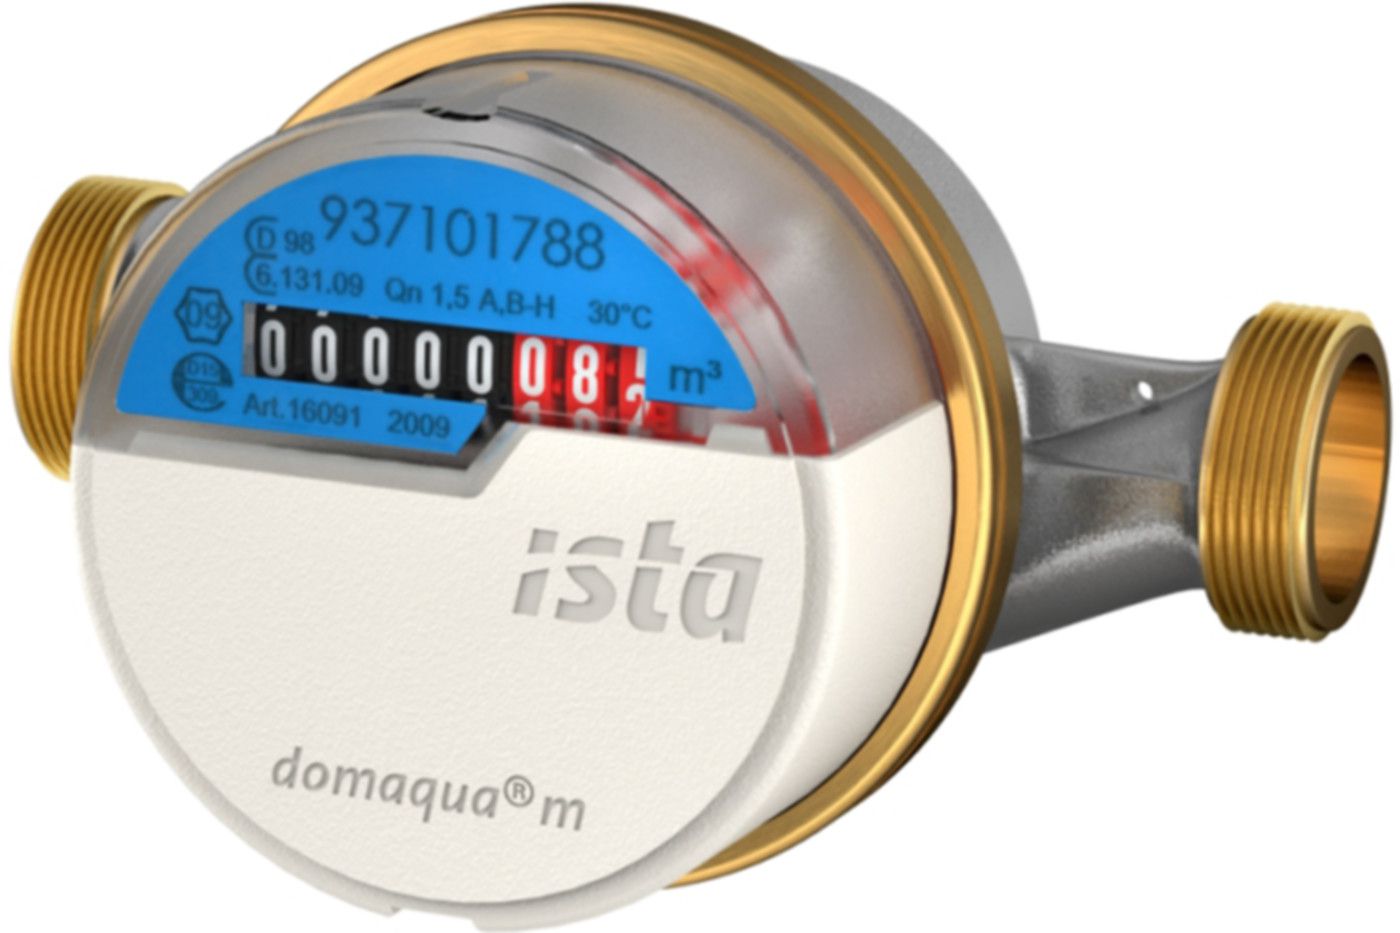 Aufputzzähler Domaqua m DN 15 1/2" G 3/4" - 80 mm warm 2.5 m3/h  16094 - ISTA - Wärme- / Wasserzähler